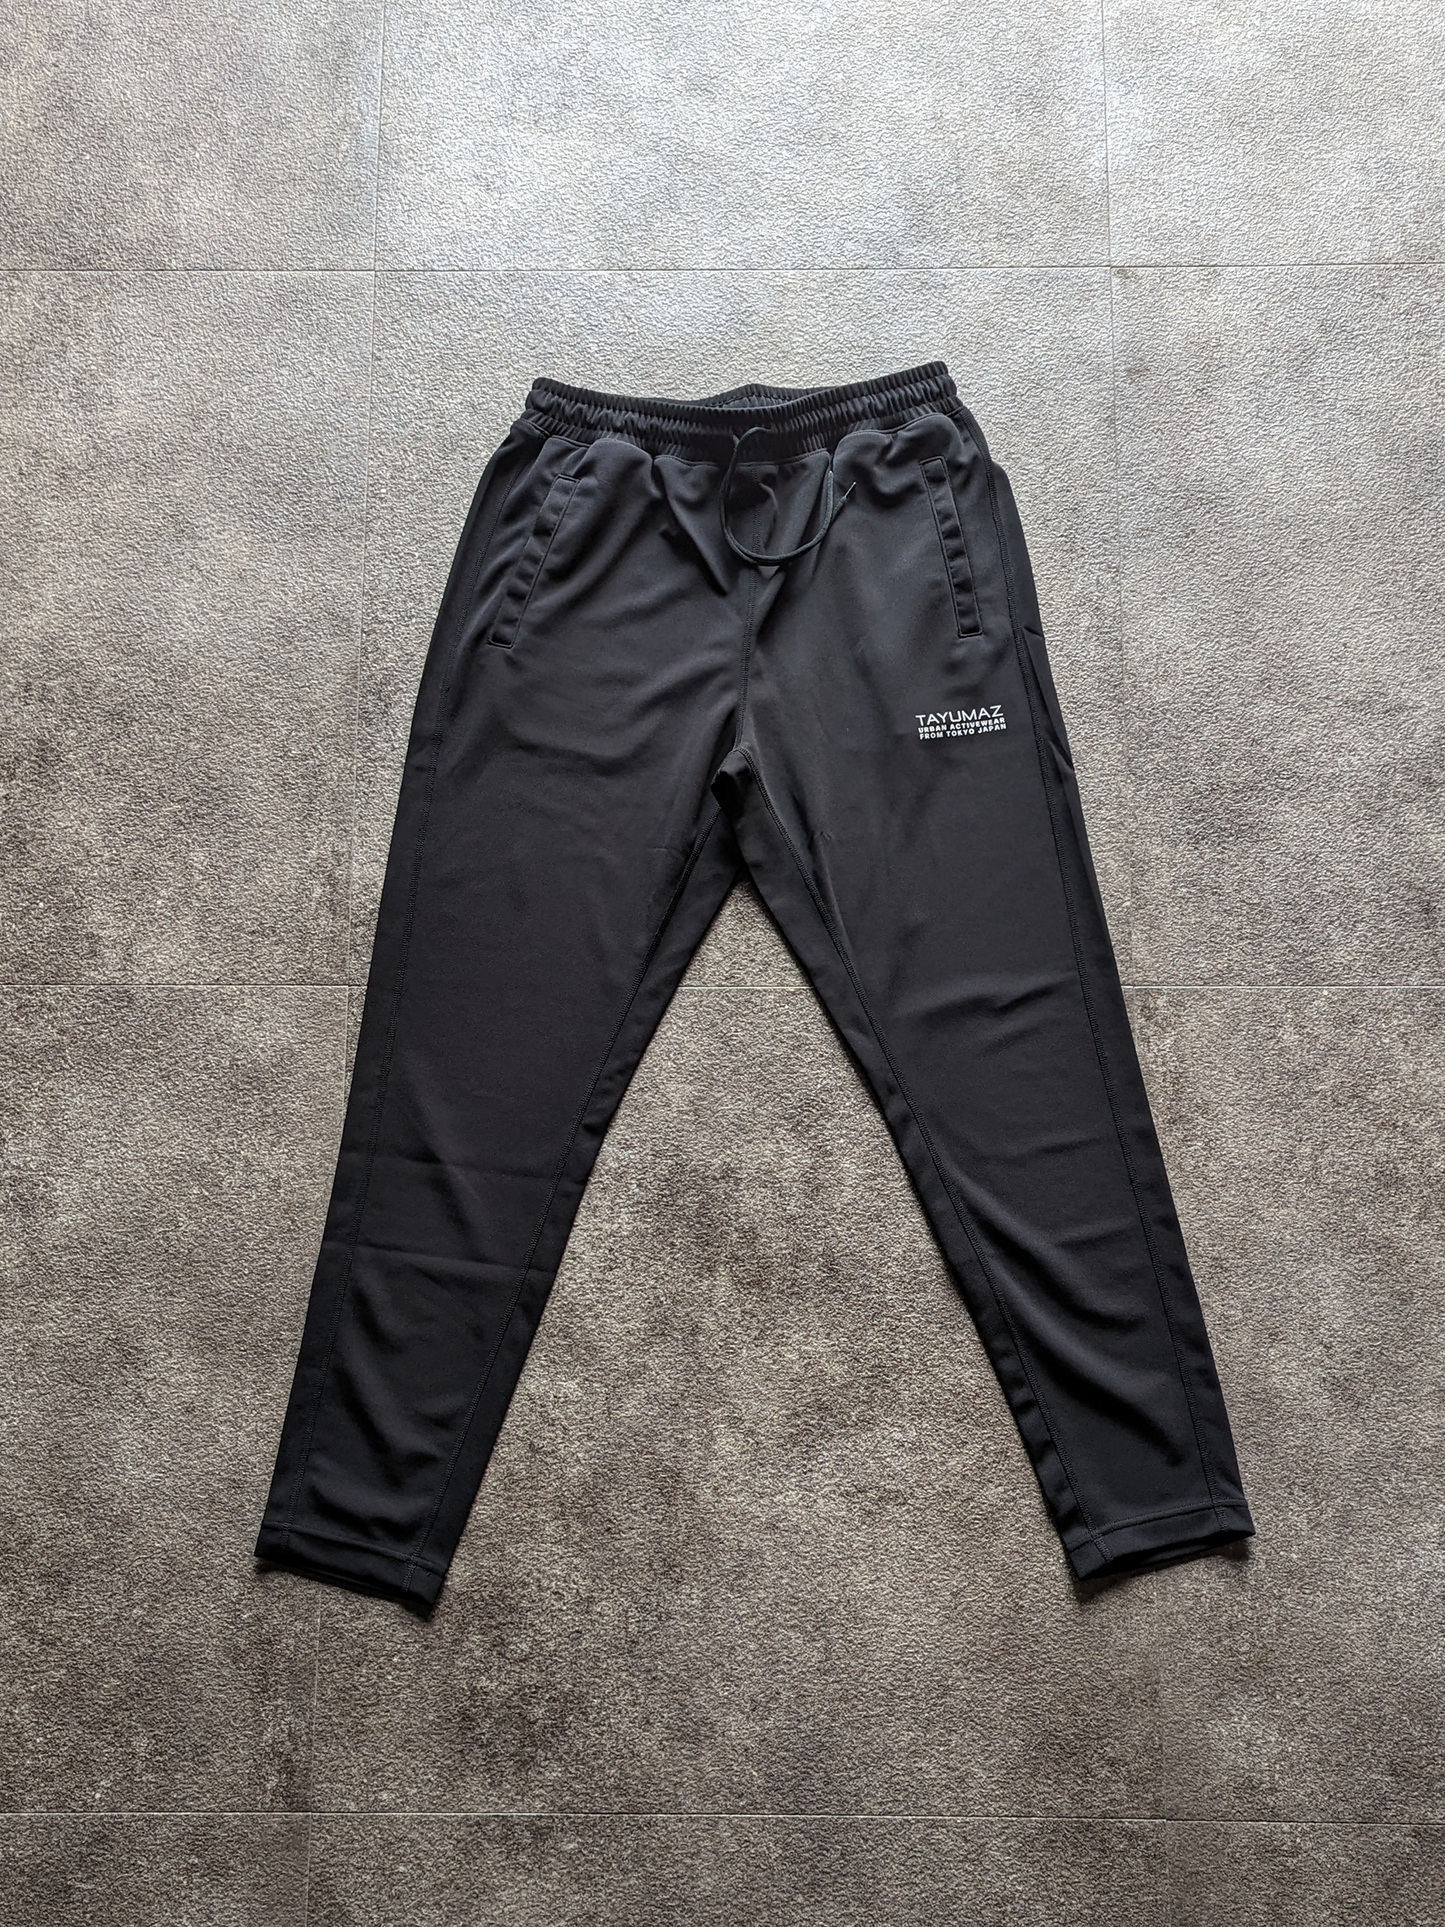 กางเกงขายาว Drysuiting สีดำ / โลโก้ Urban สีดำ